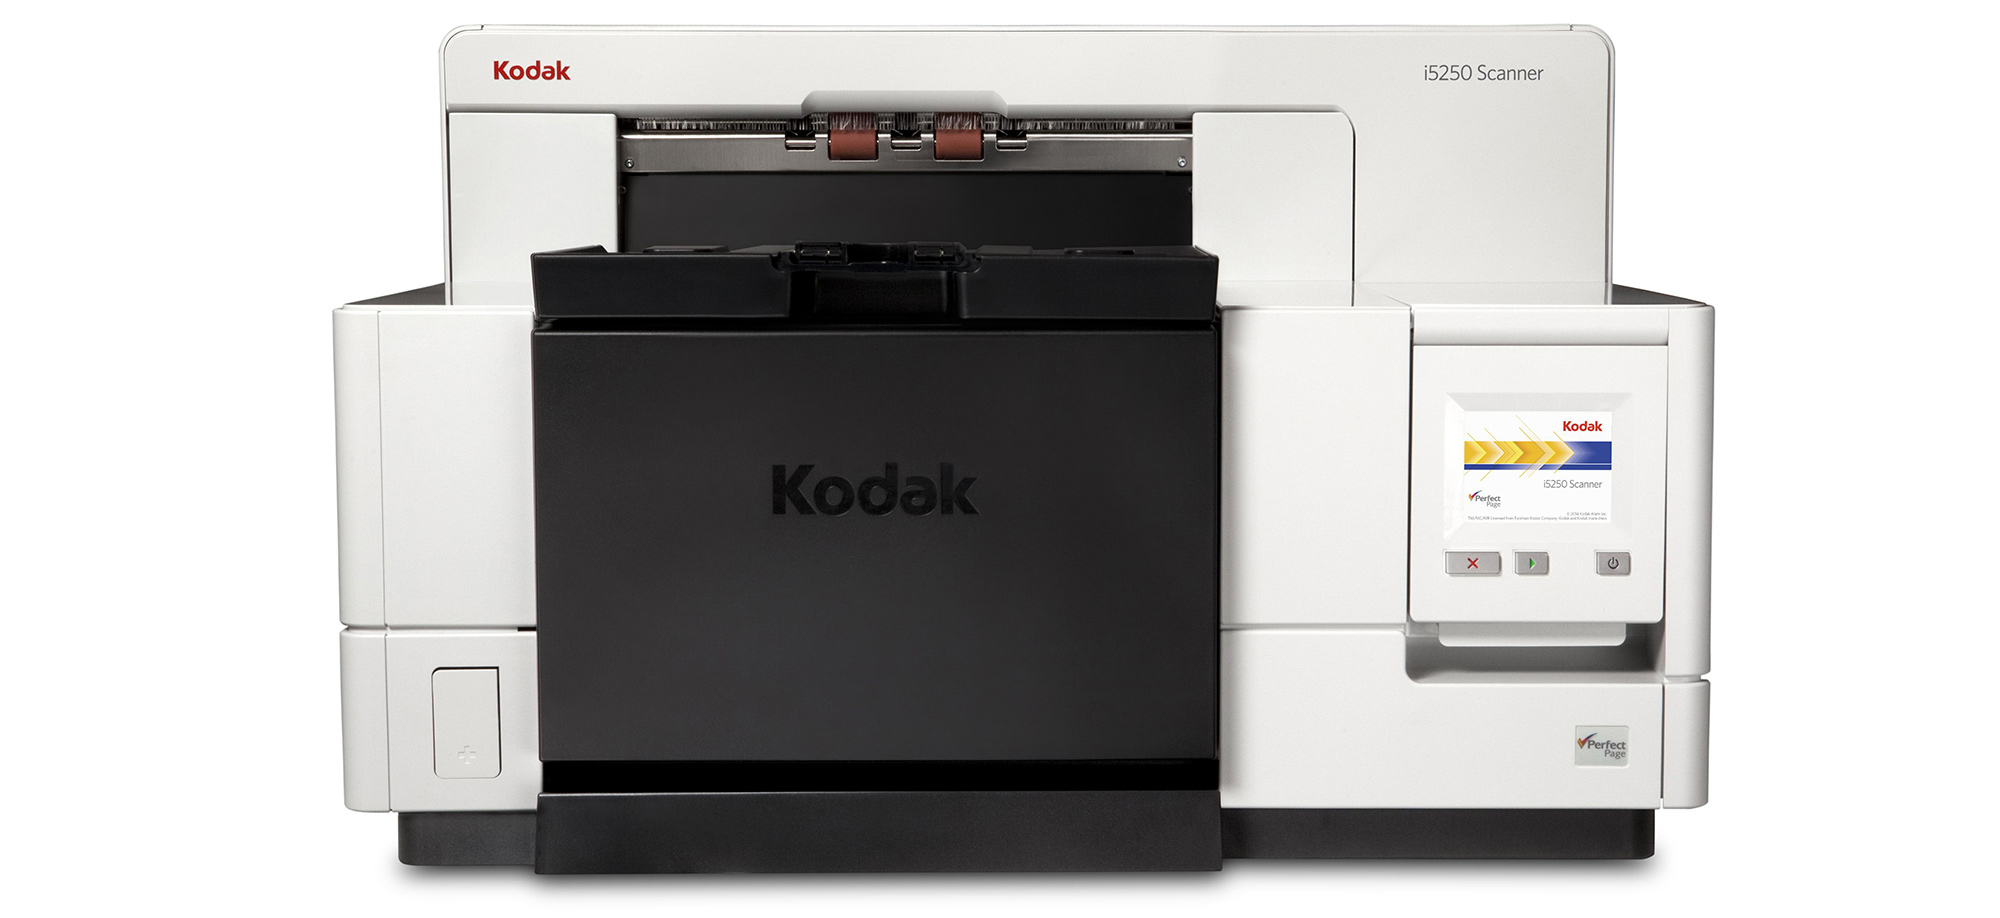 Scanner Kodak Serie i5000